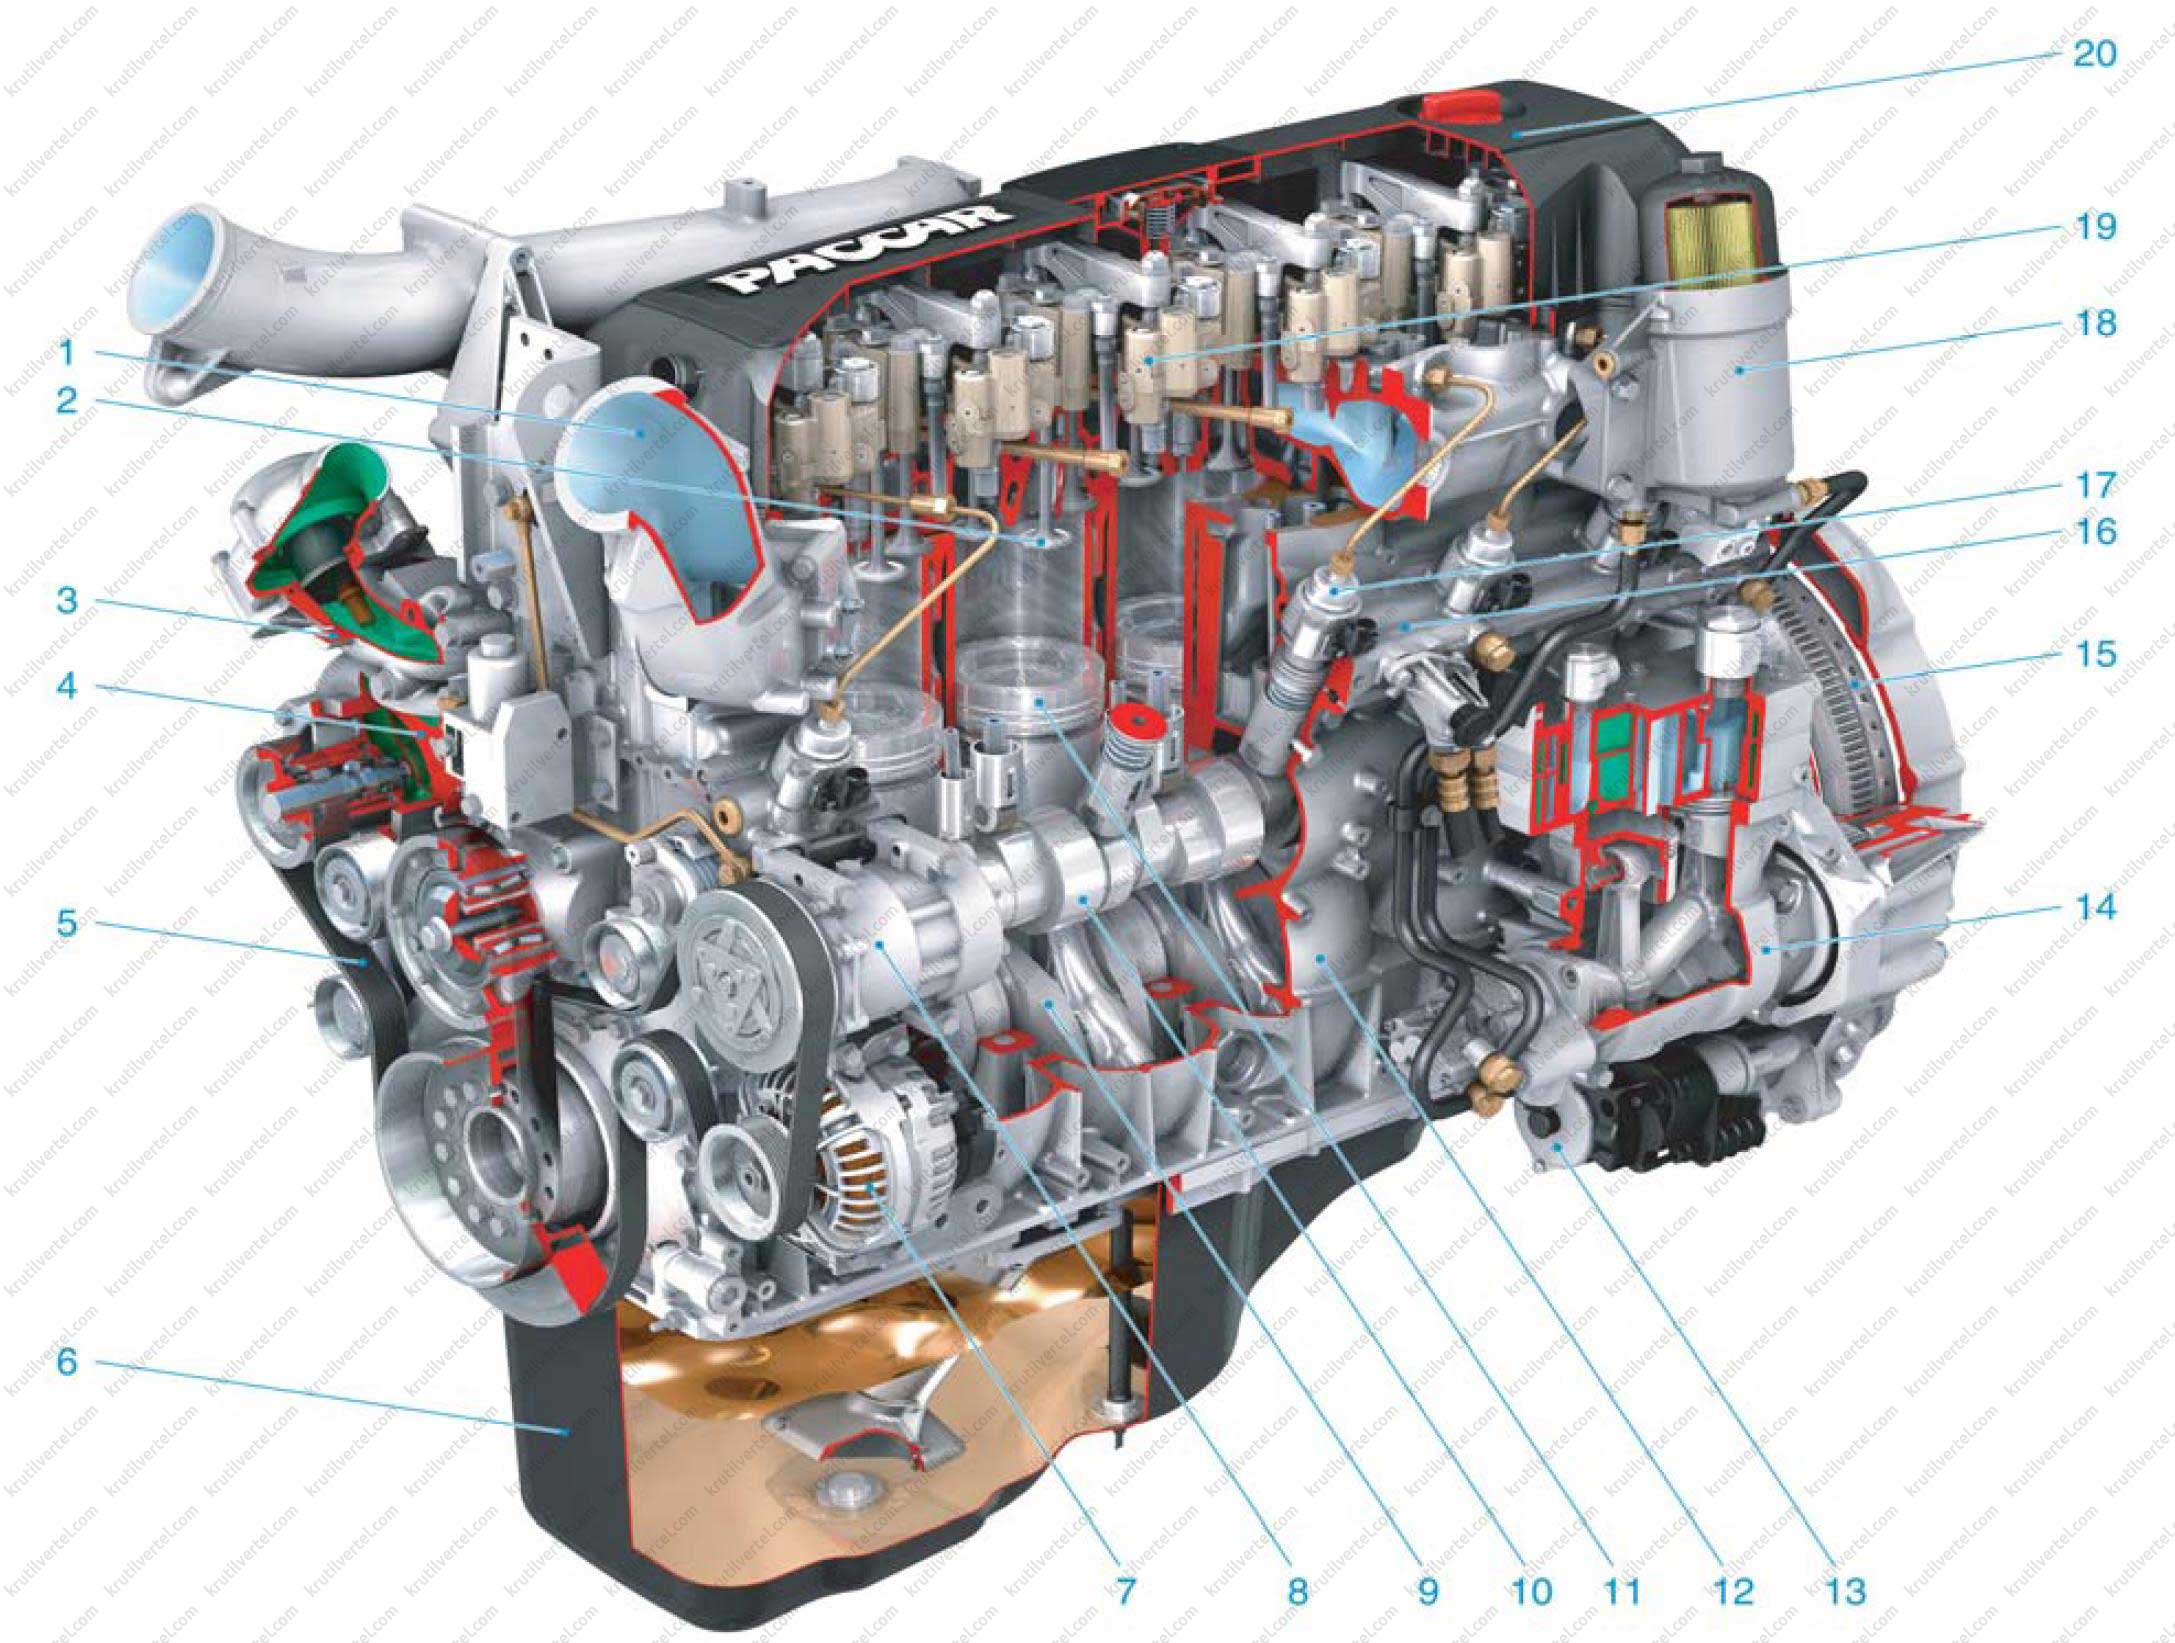 Иномарка дизель. Двигатель man Diesel & Turbo” s35mc. ДВС Paccar. Cummins c300 двигатель. Дизельный двигатель внутреннего сгорания.